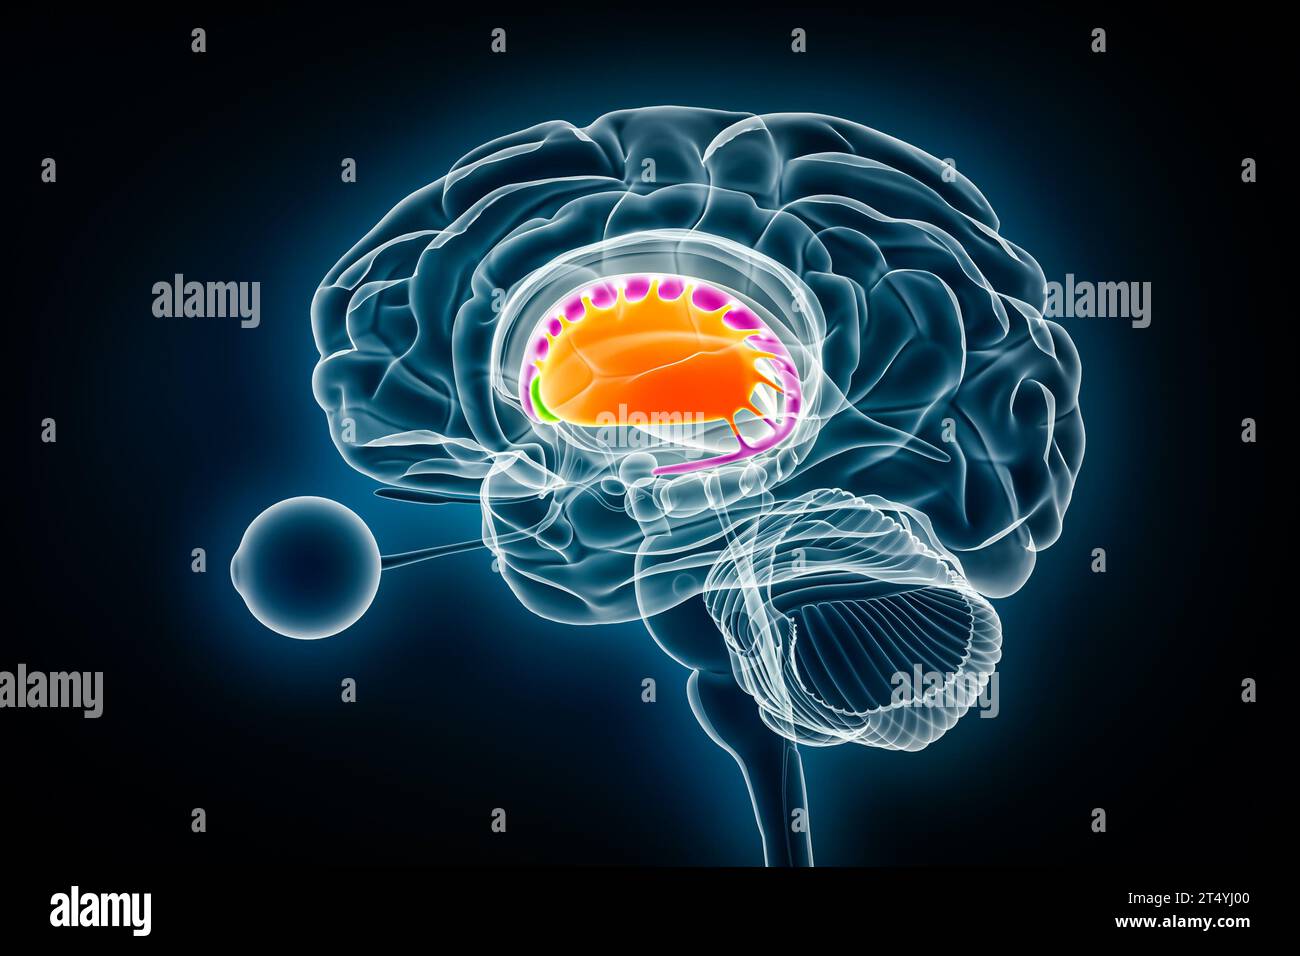 Putamen in orange, nucleus accumbens in green and caudate nucleus in purple 3D rendering illustration. Human brain, basal ganglia and corpus striatum Stock Photo